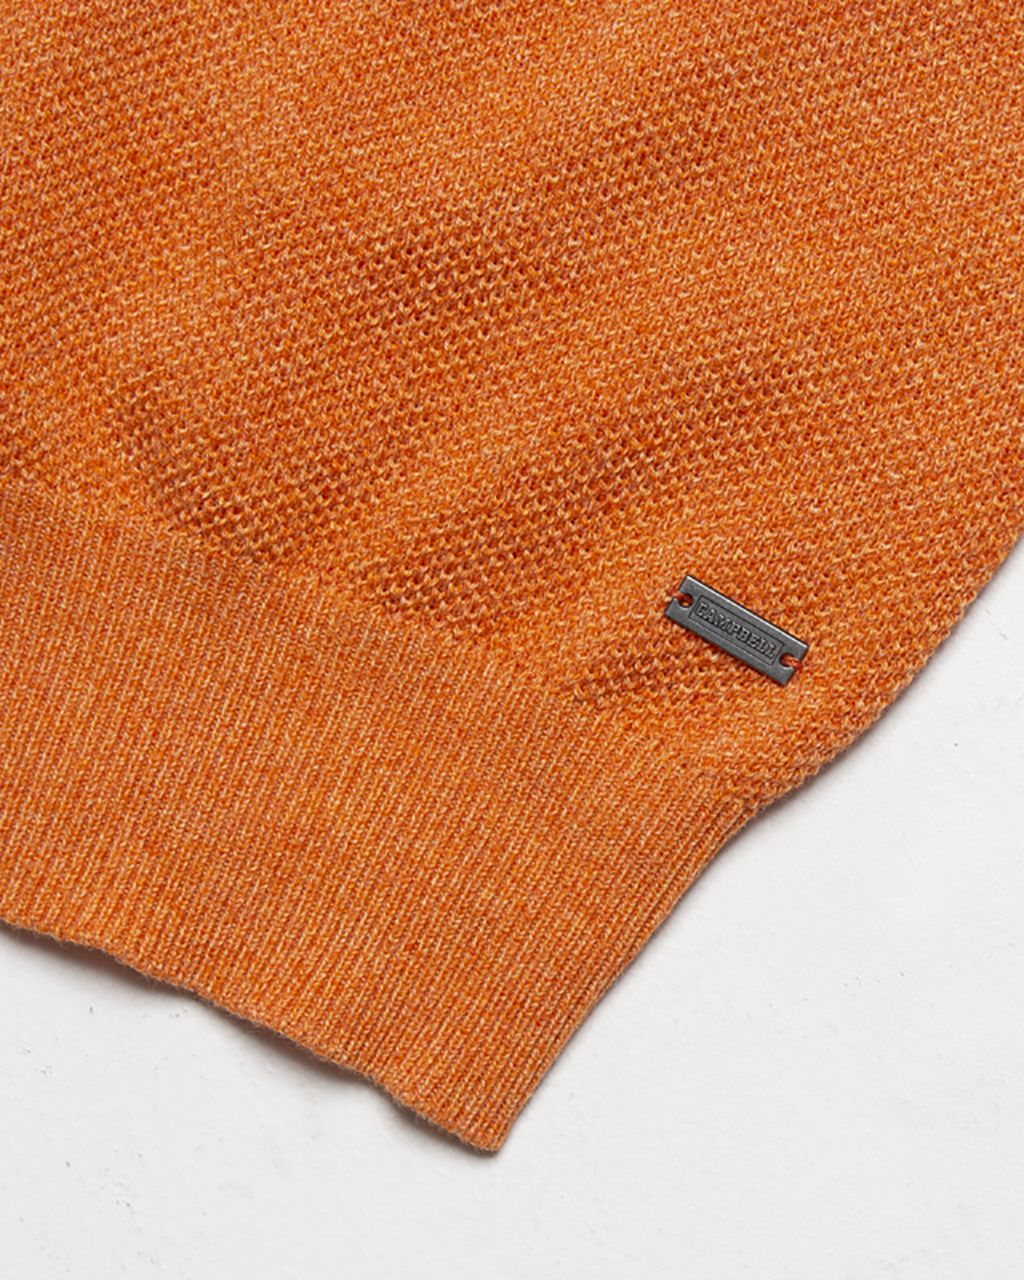 Campbell Classic Knitwear Oranje dessin 064398-001-L